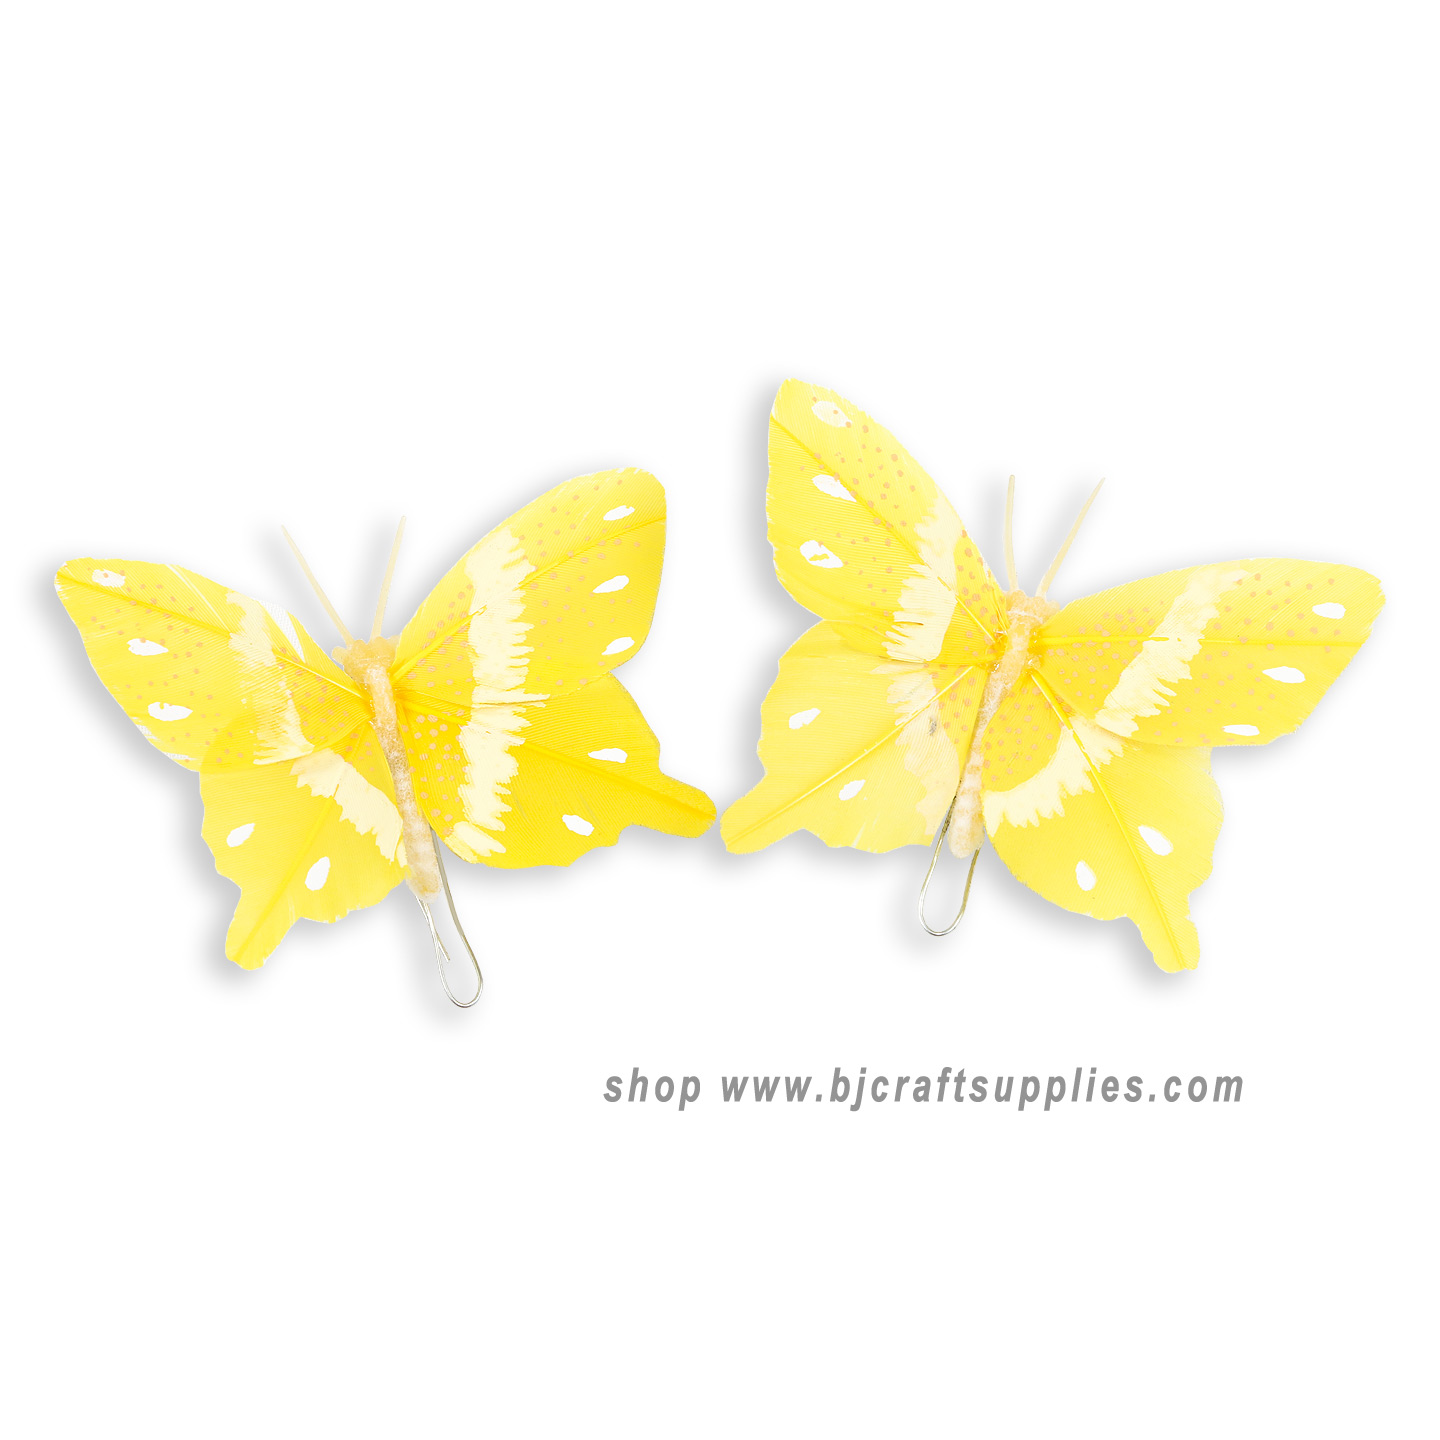 Decorative Butterflies - Artificial Butterflies - Butterflies for Crafts - Fake Butterflies